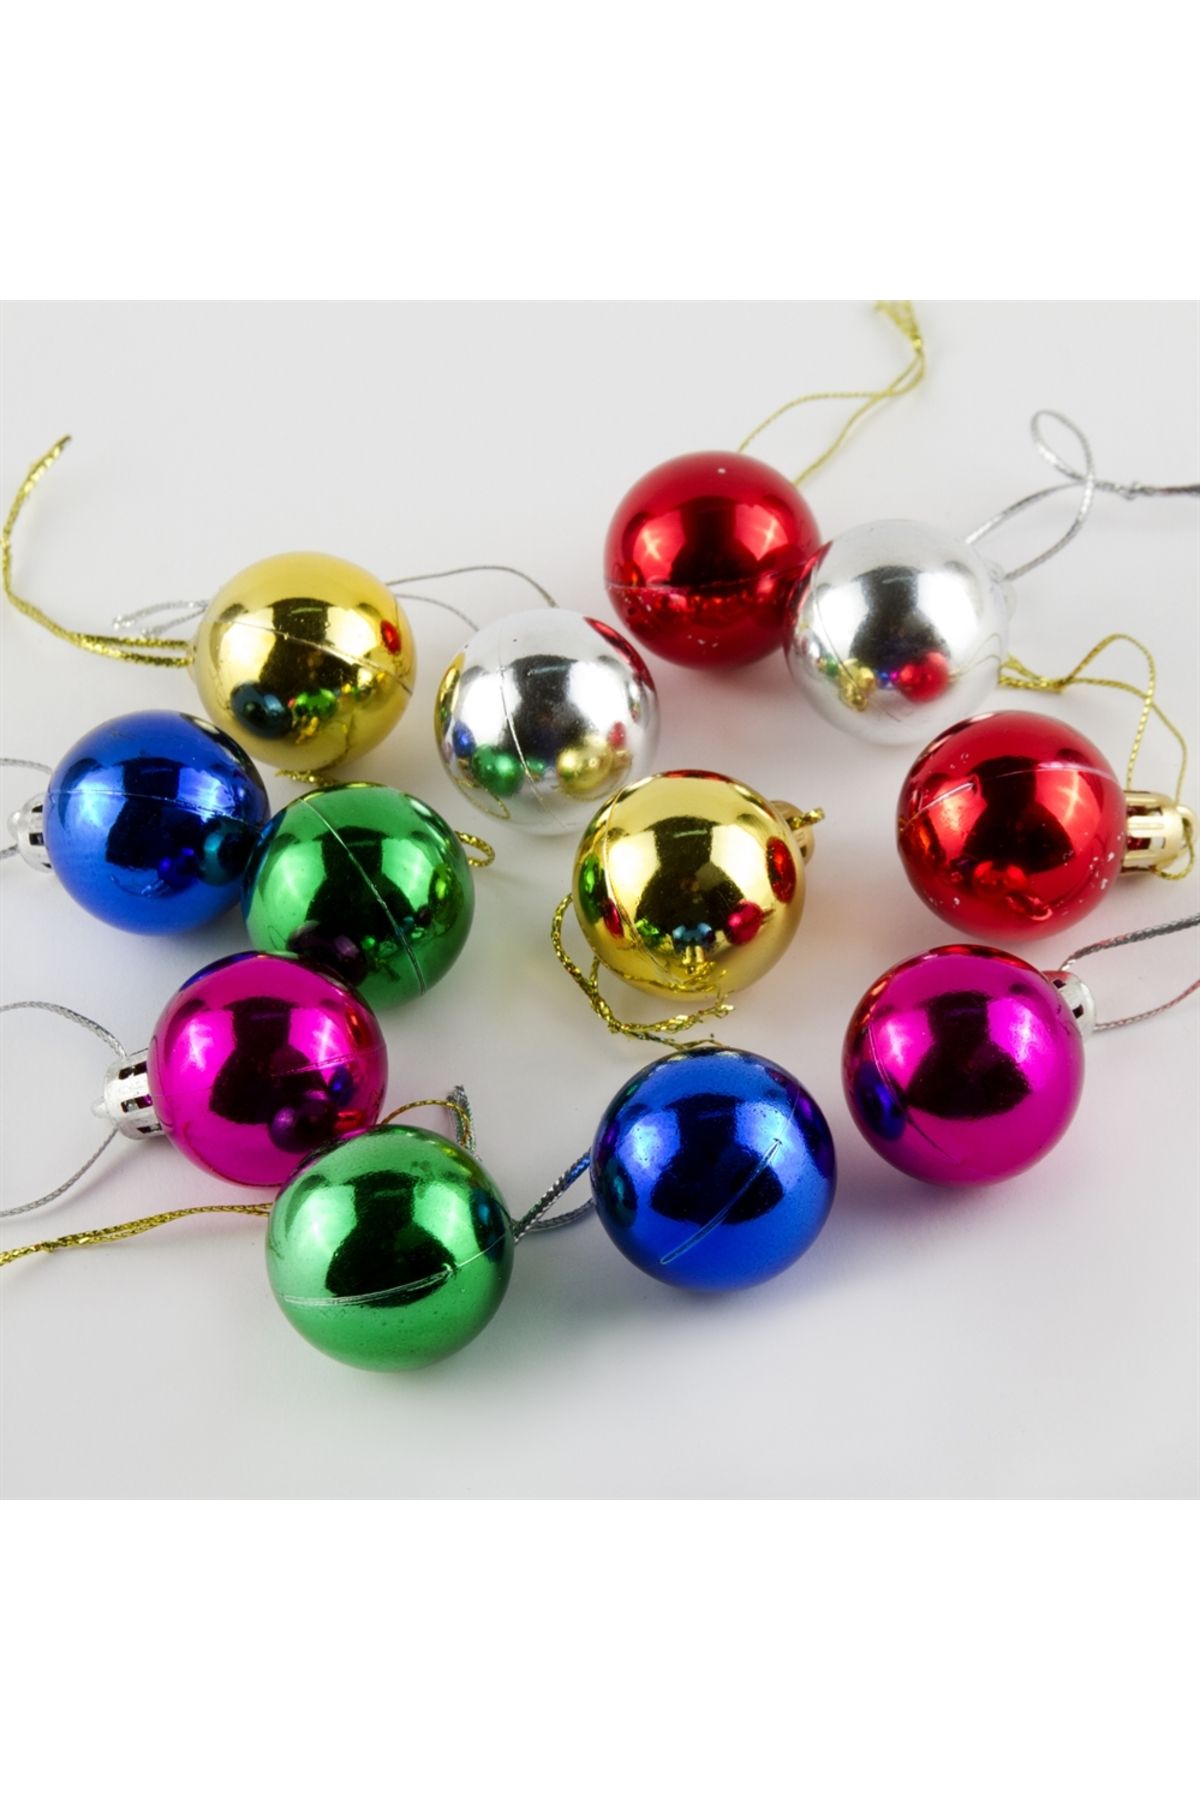 bosphorus online Yılbaşı Çam Ağacı, Yeni Yıl Süsü topu 12 adet 4 cm Renki